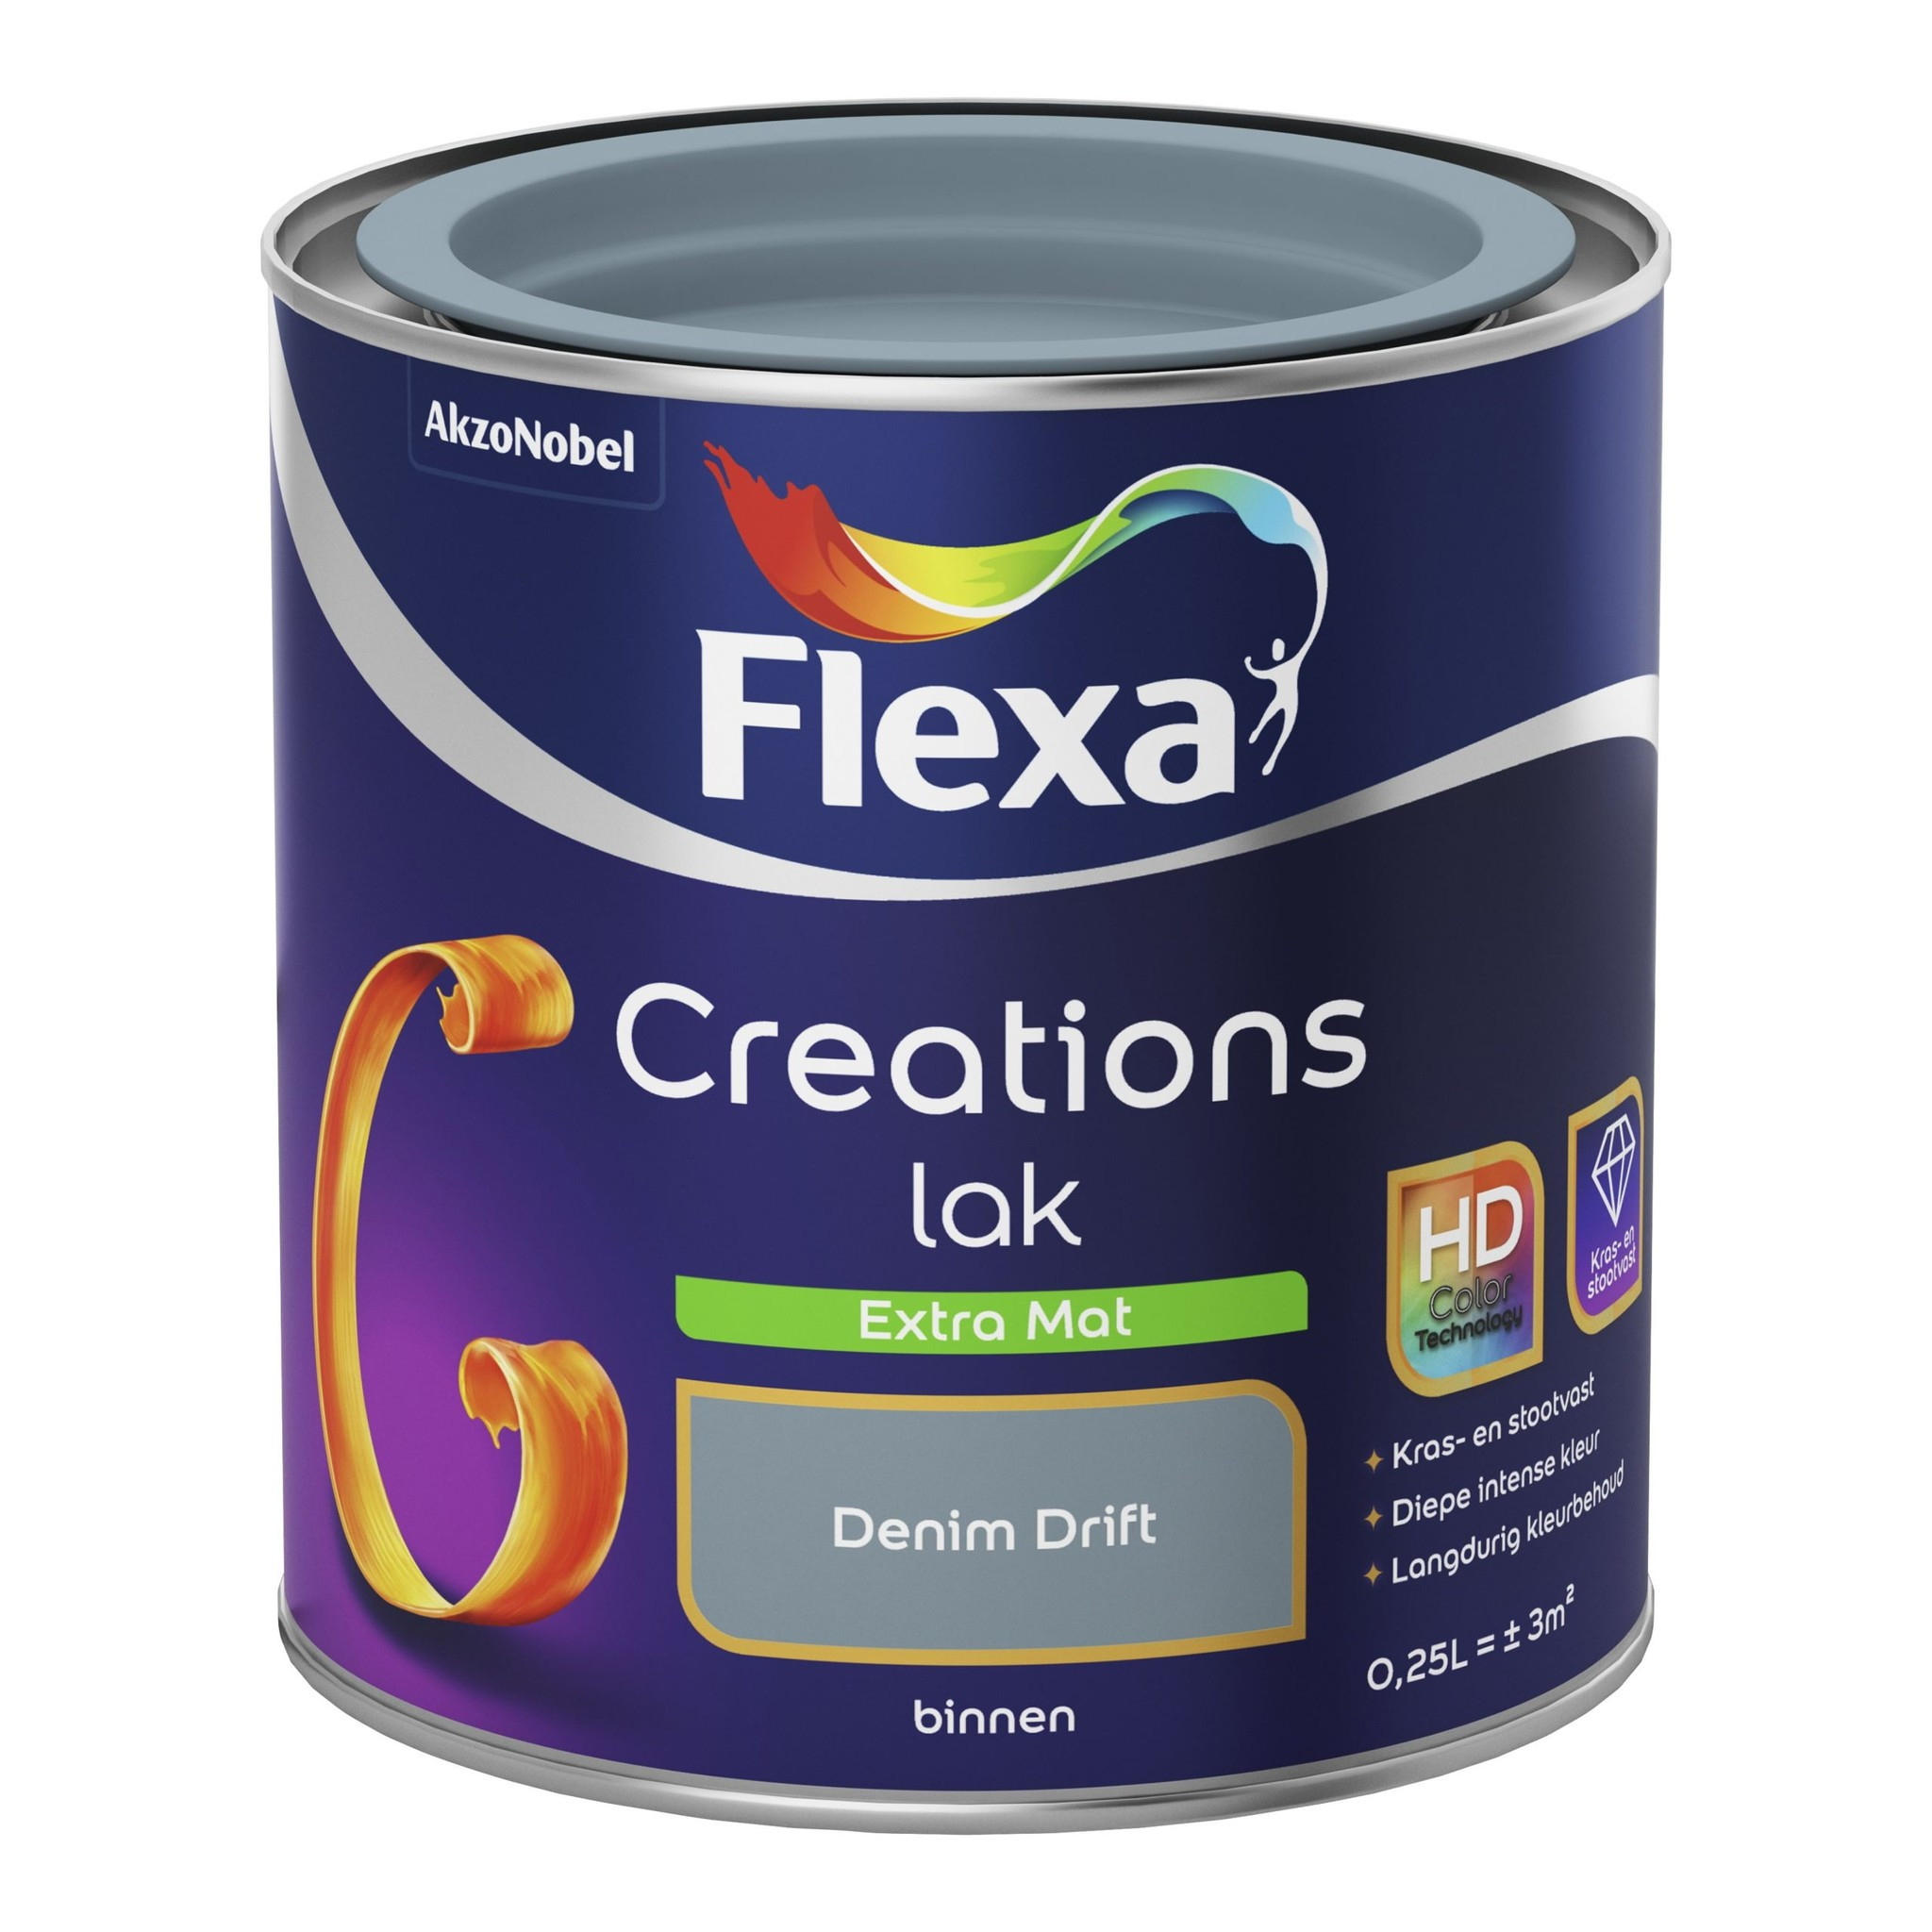 Flexa Creations Lak Extra Mat - Denim Drift